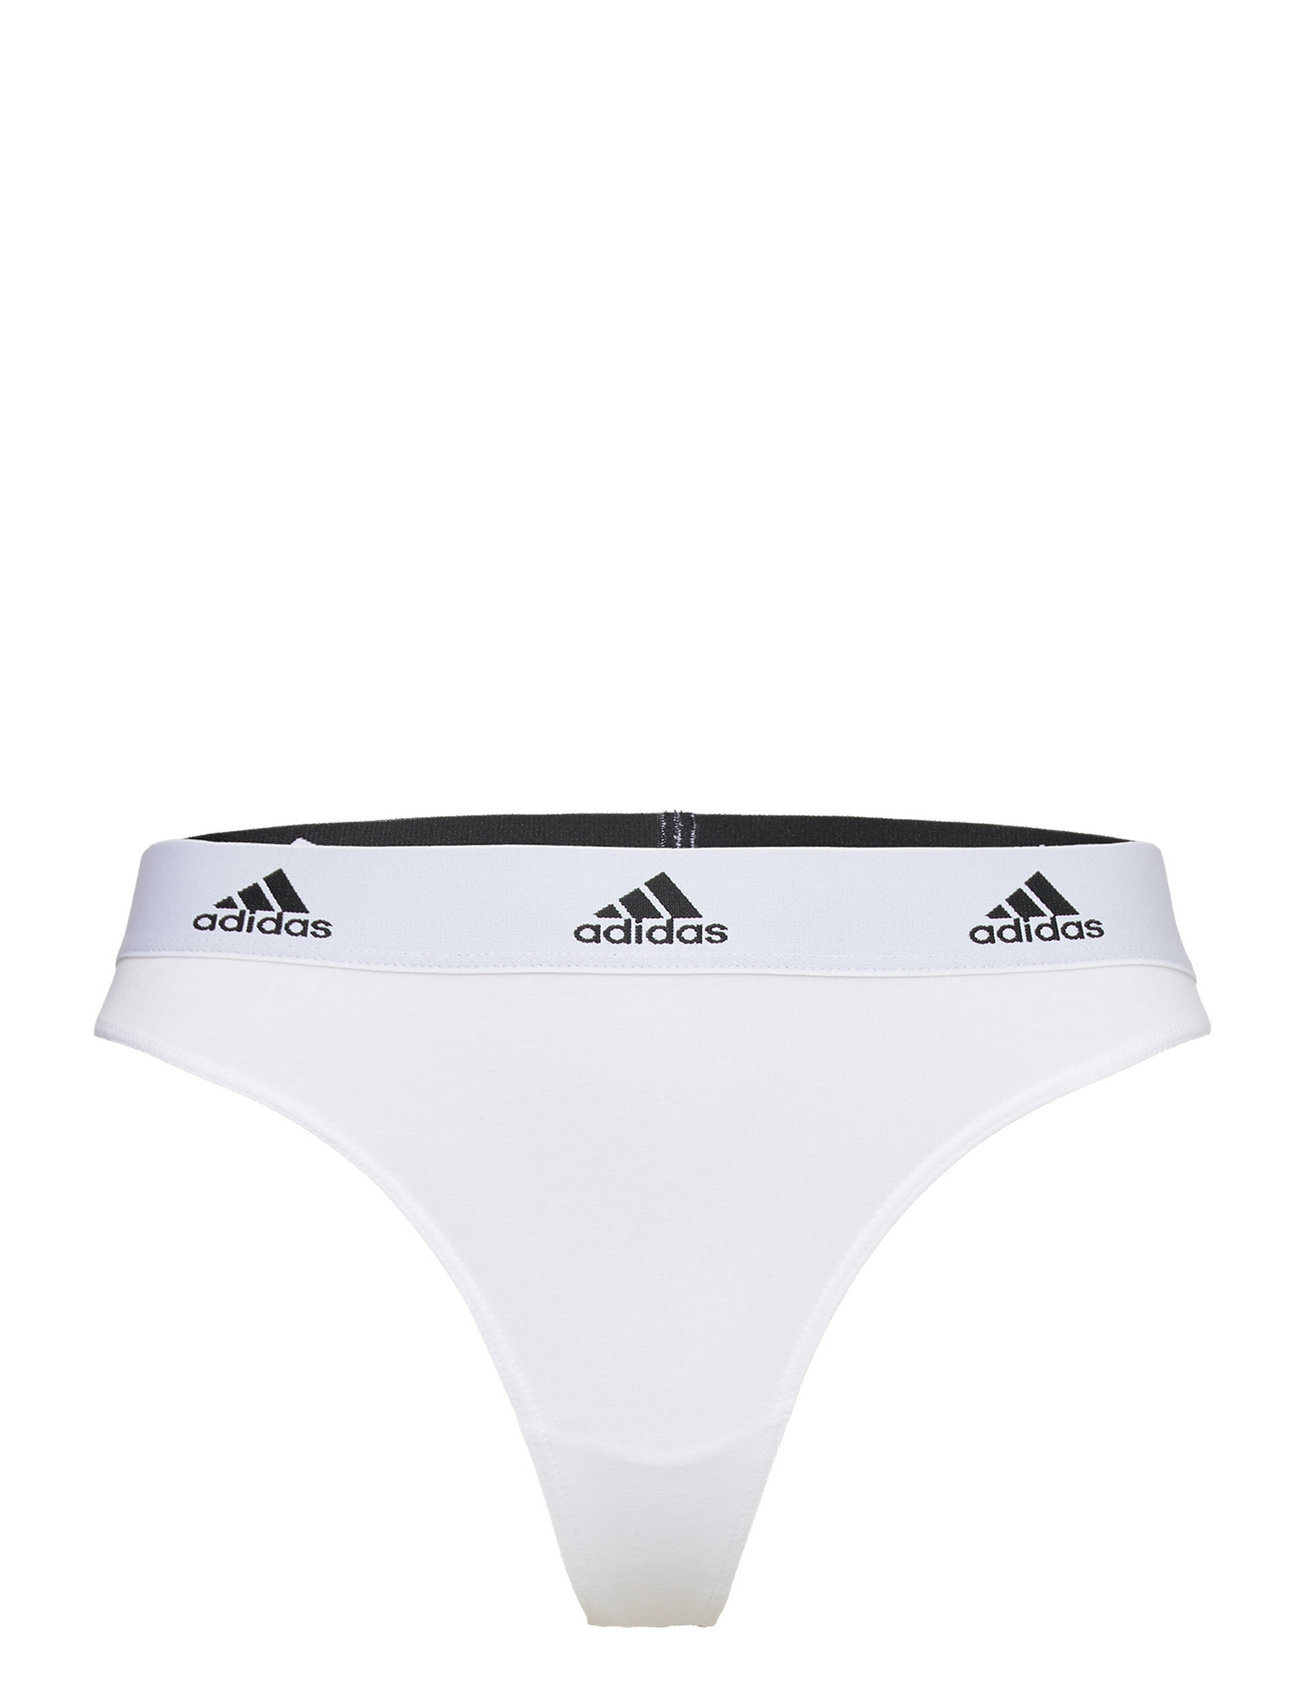 adidas Originals Underwear Thong – panties – shop at Booztlet